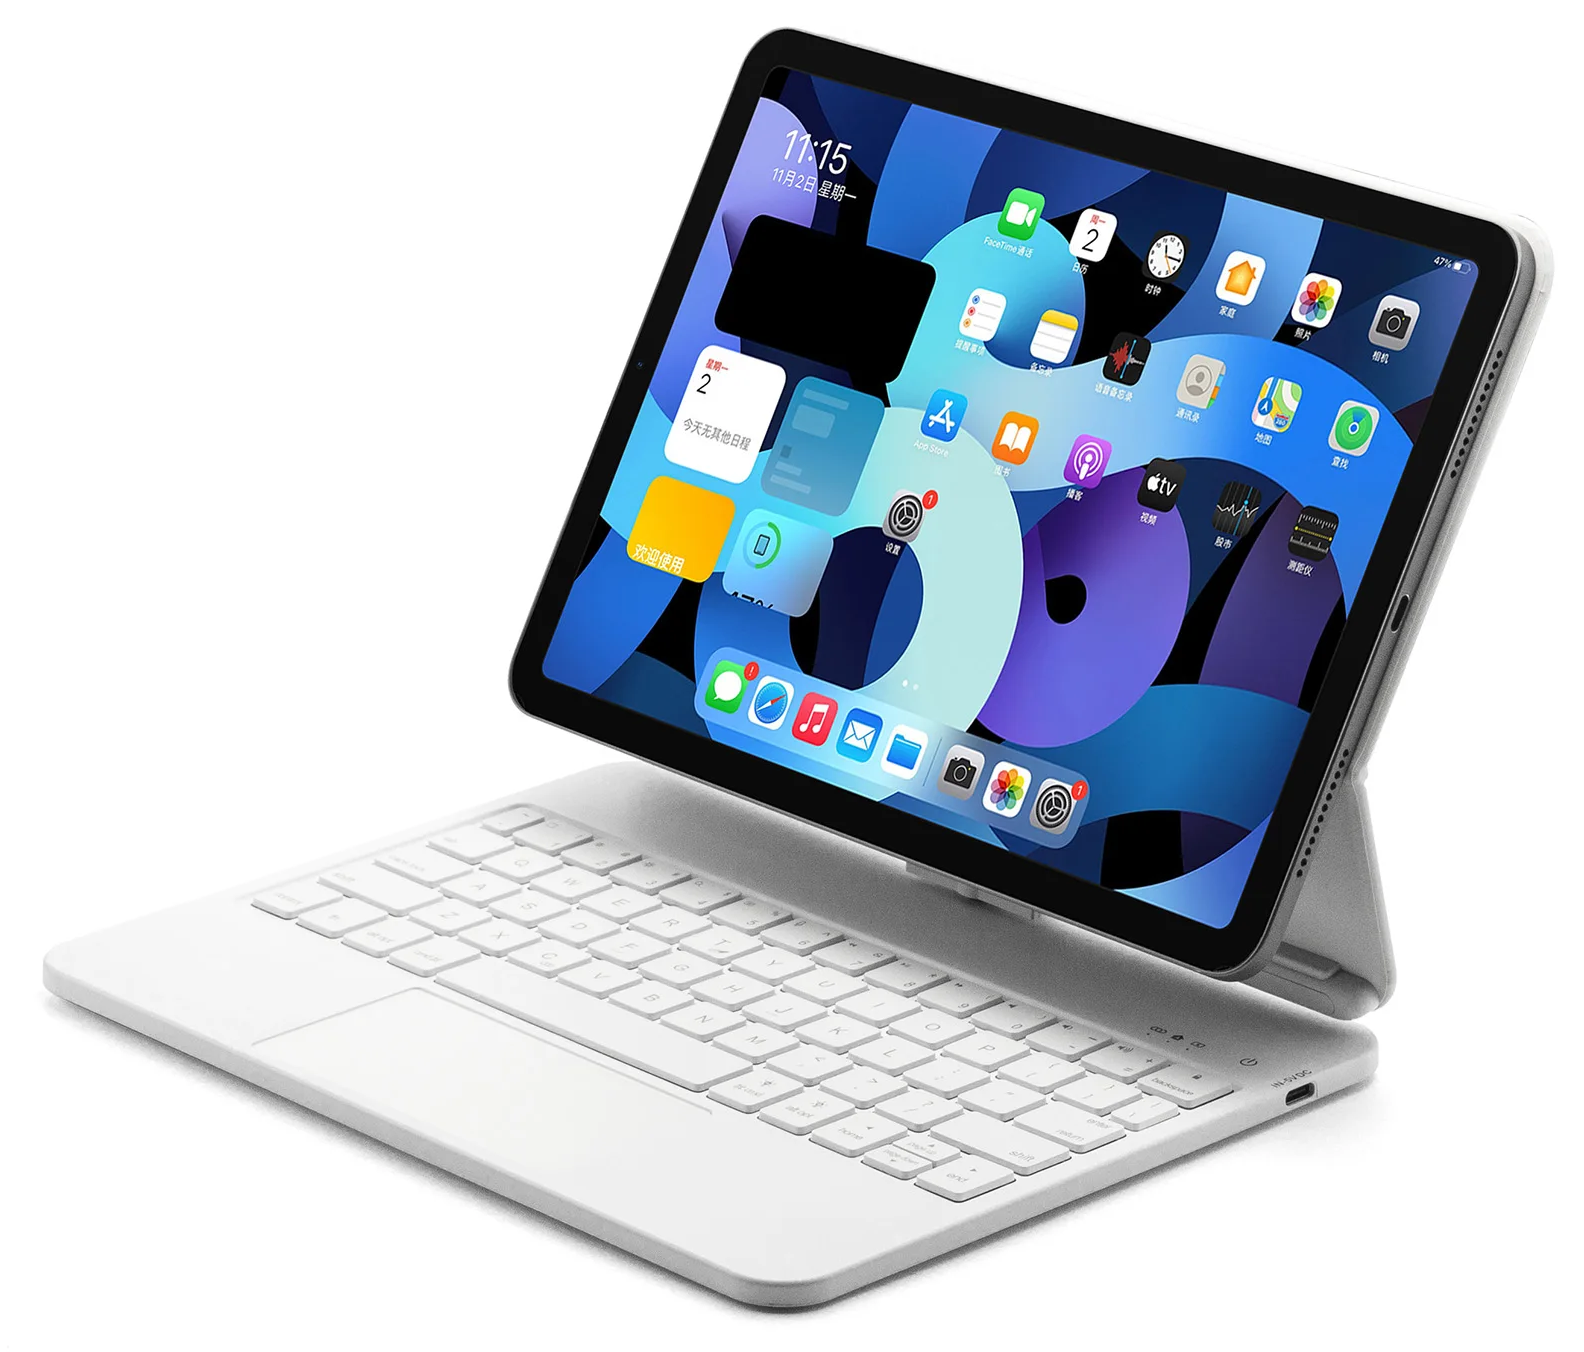 L'iPad Air est la tablette milieu de gamme d'Apple, offrant de nombreuses fonctionnalités clés de l'iPad telles qu'un port USB-C et Touch ID à partir de 599 €.
